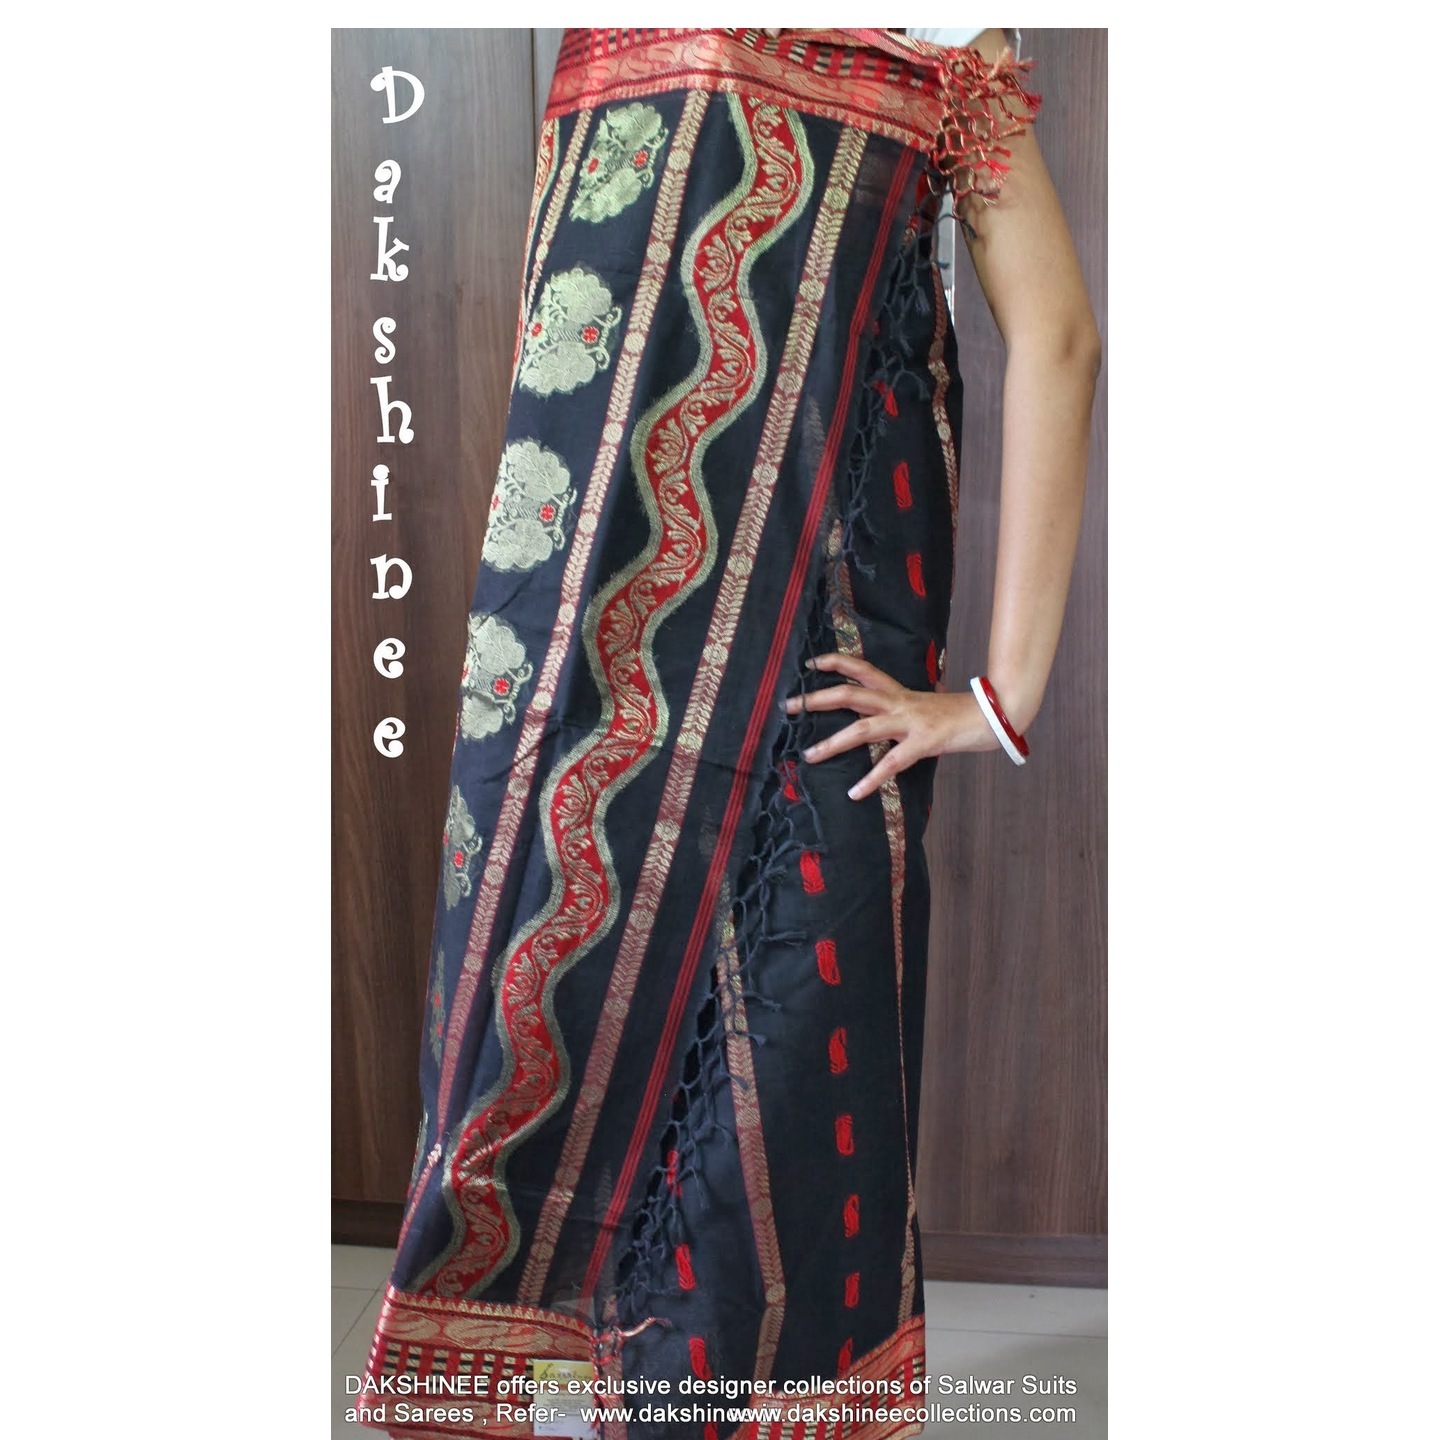 DKC1COA8-PCB009-P - Dhaka handloom cotton saree